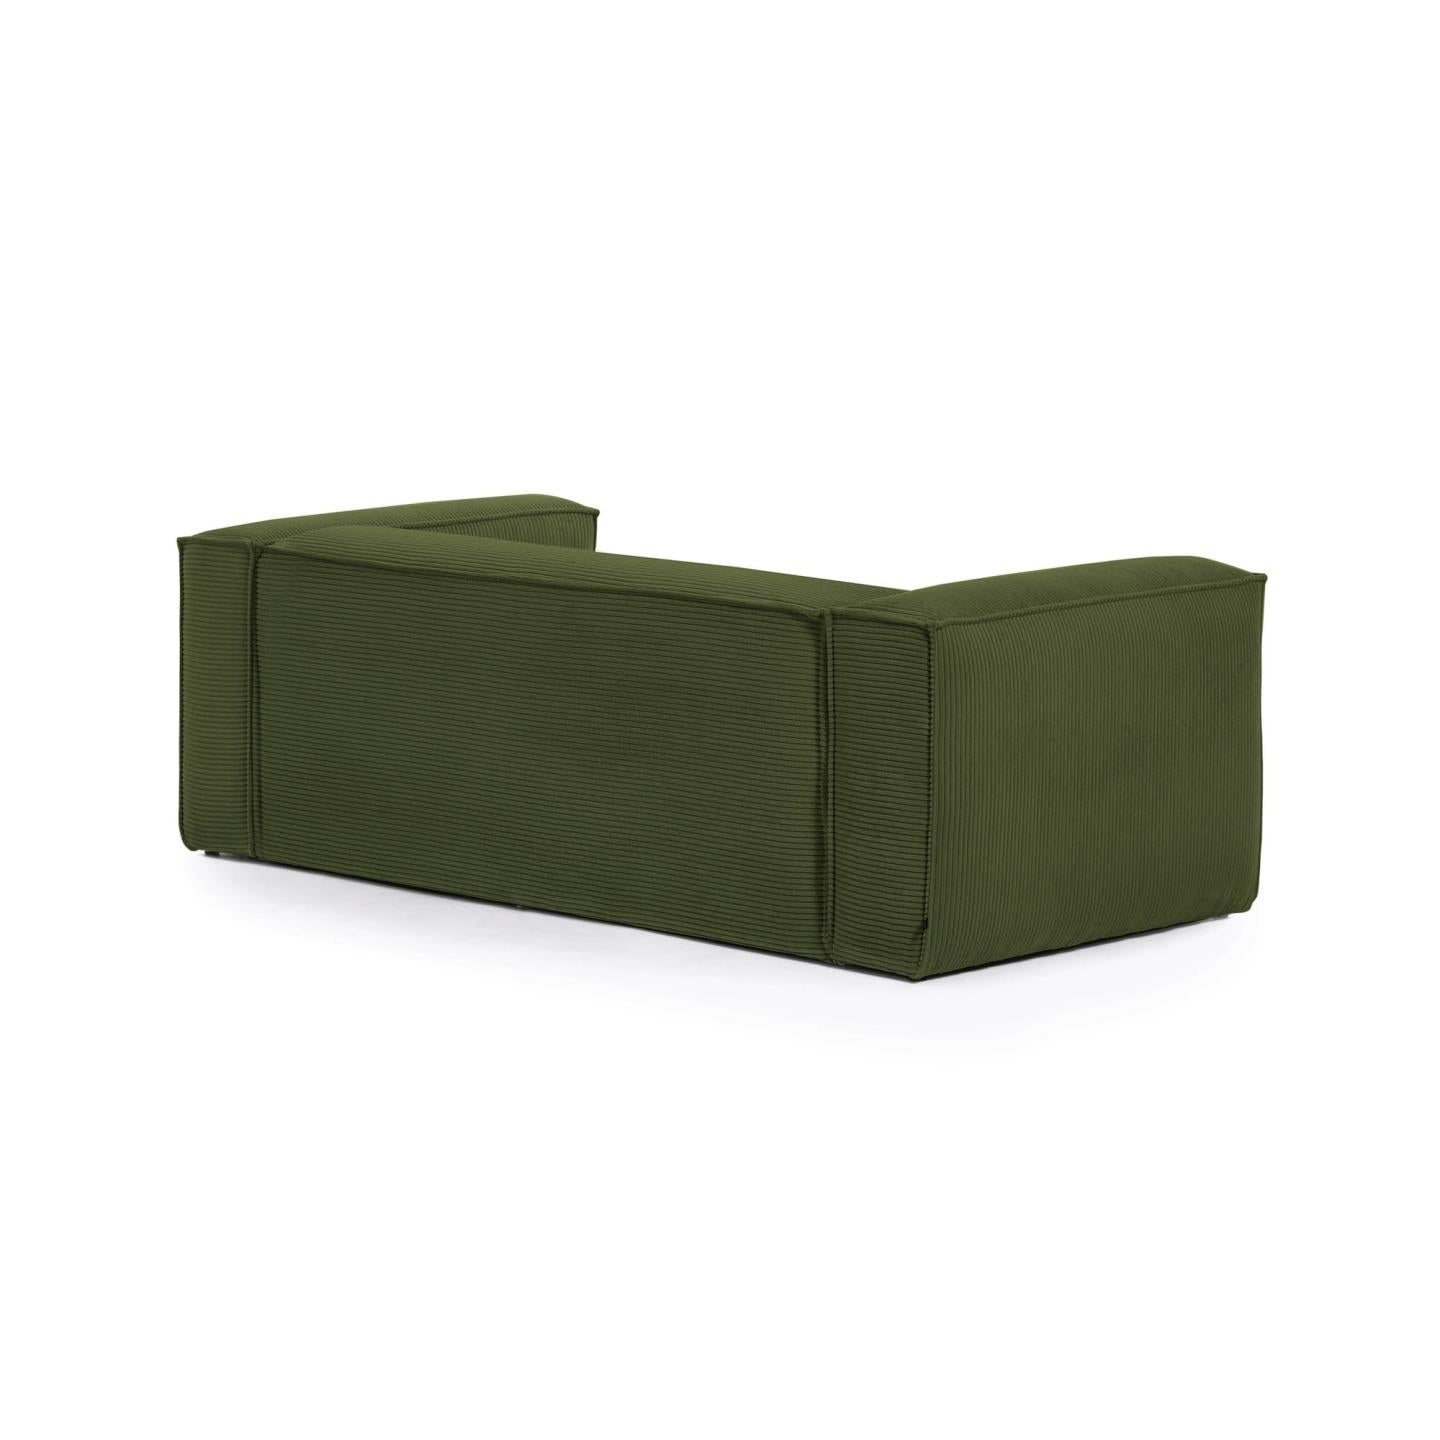 Blok 2 személyes kanapé jobb oldali fekvőfotellel, zöld, széles varrású kordbársonyból, 240 cm